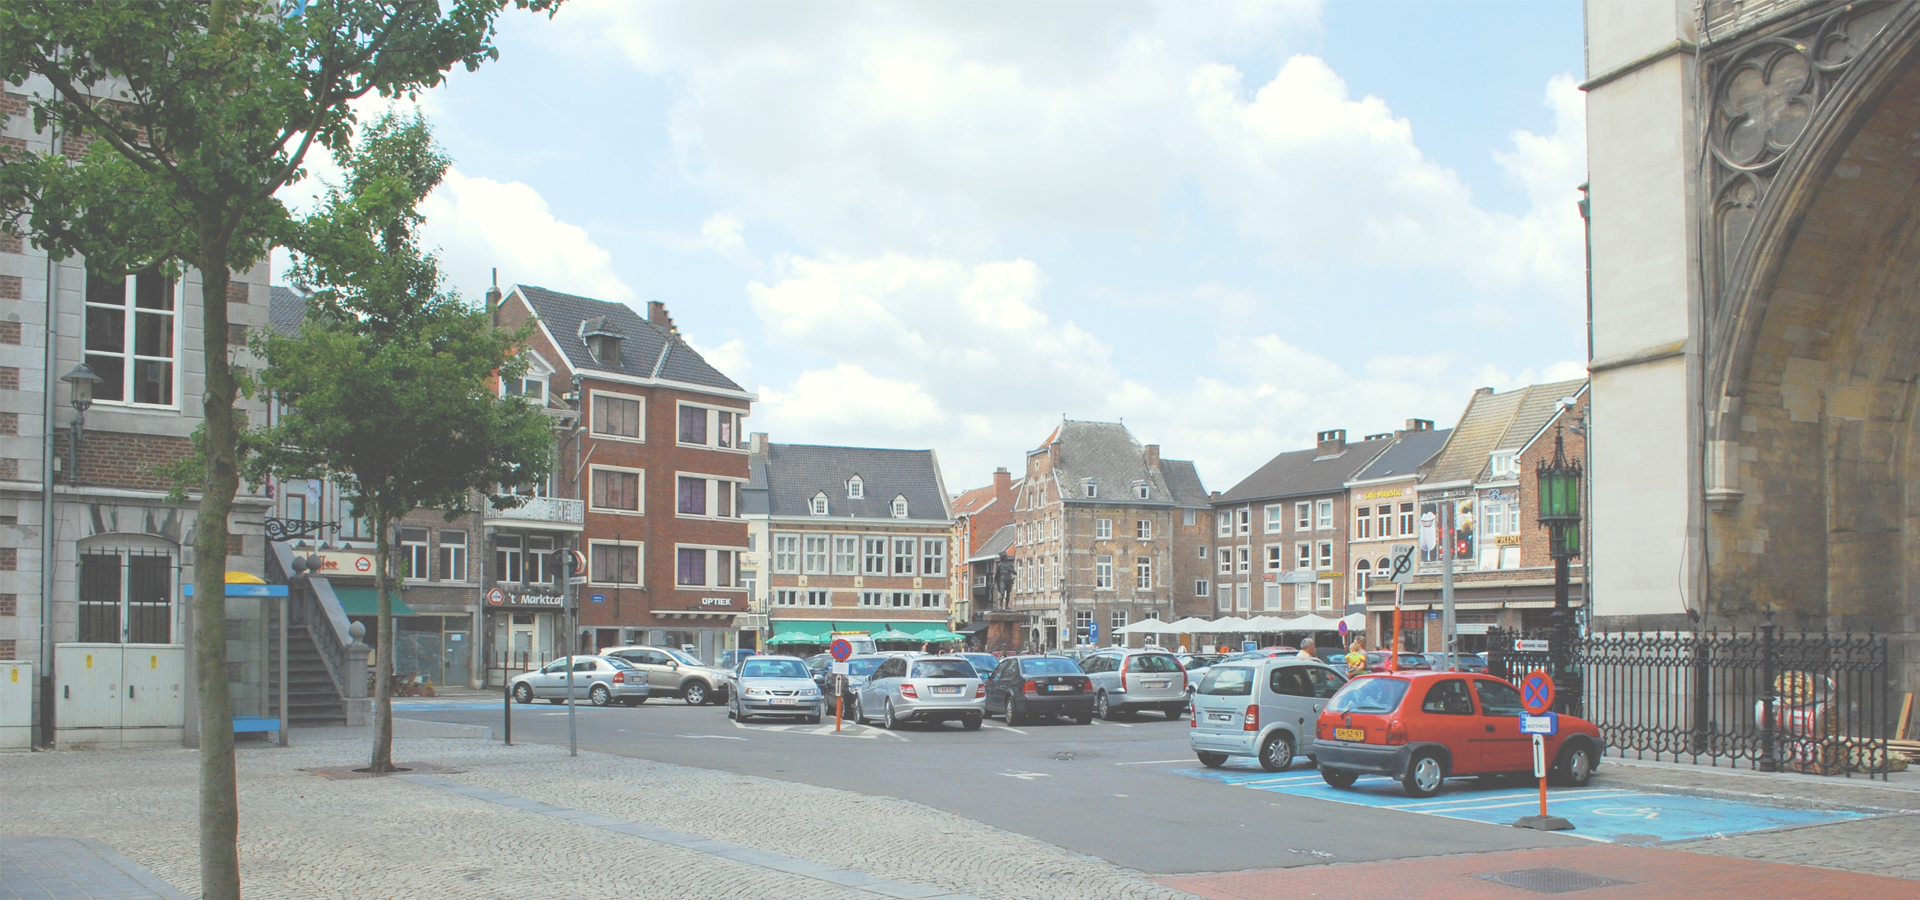 <b>Tongeren, Limburg Province, Flanders, Belgium</b>